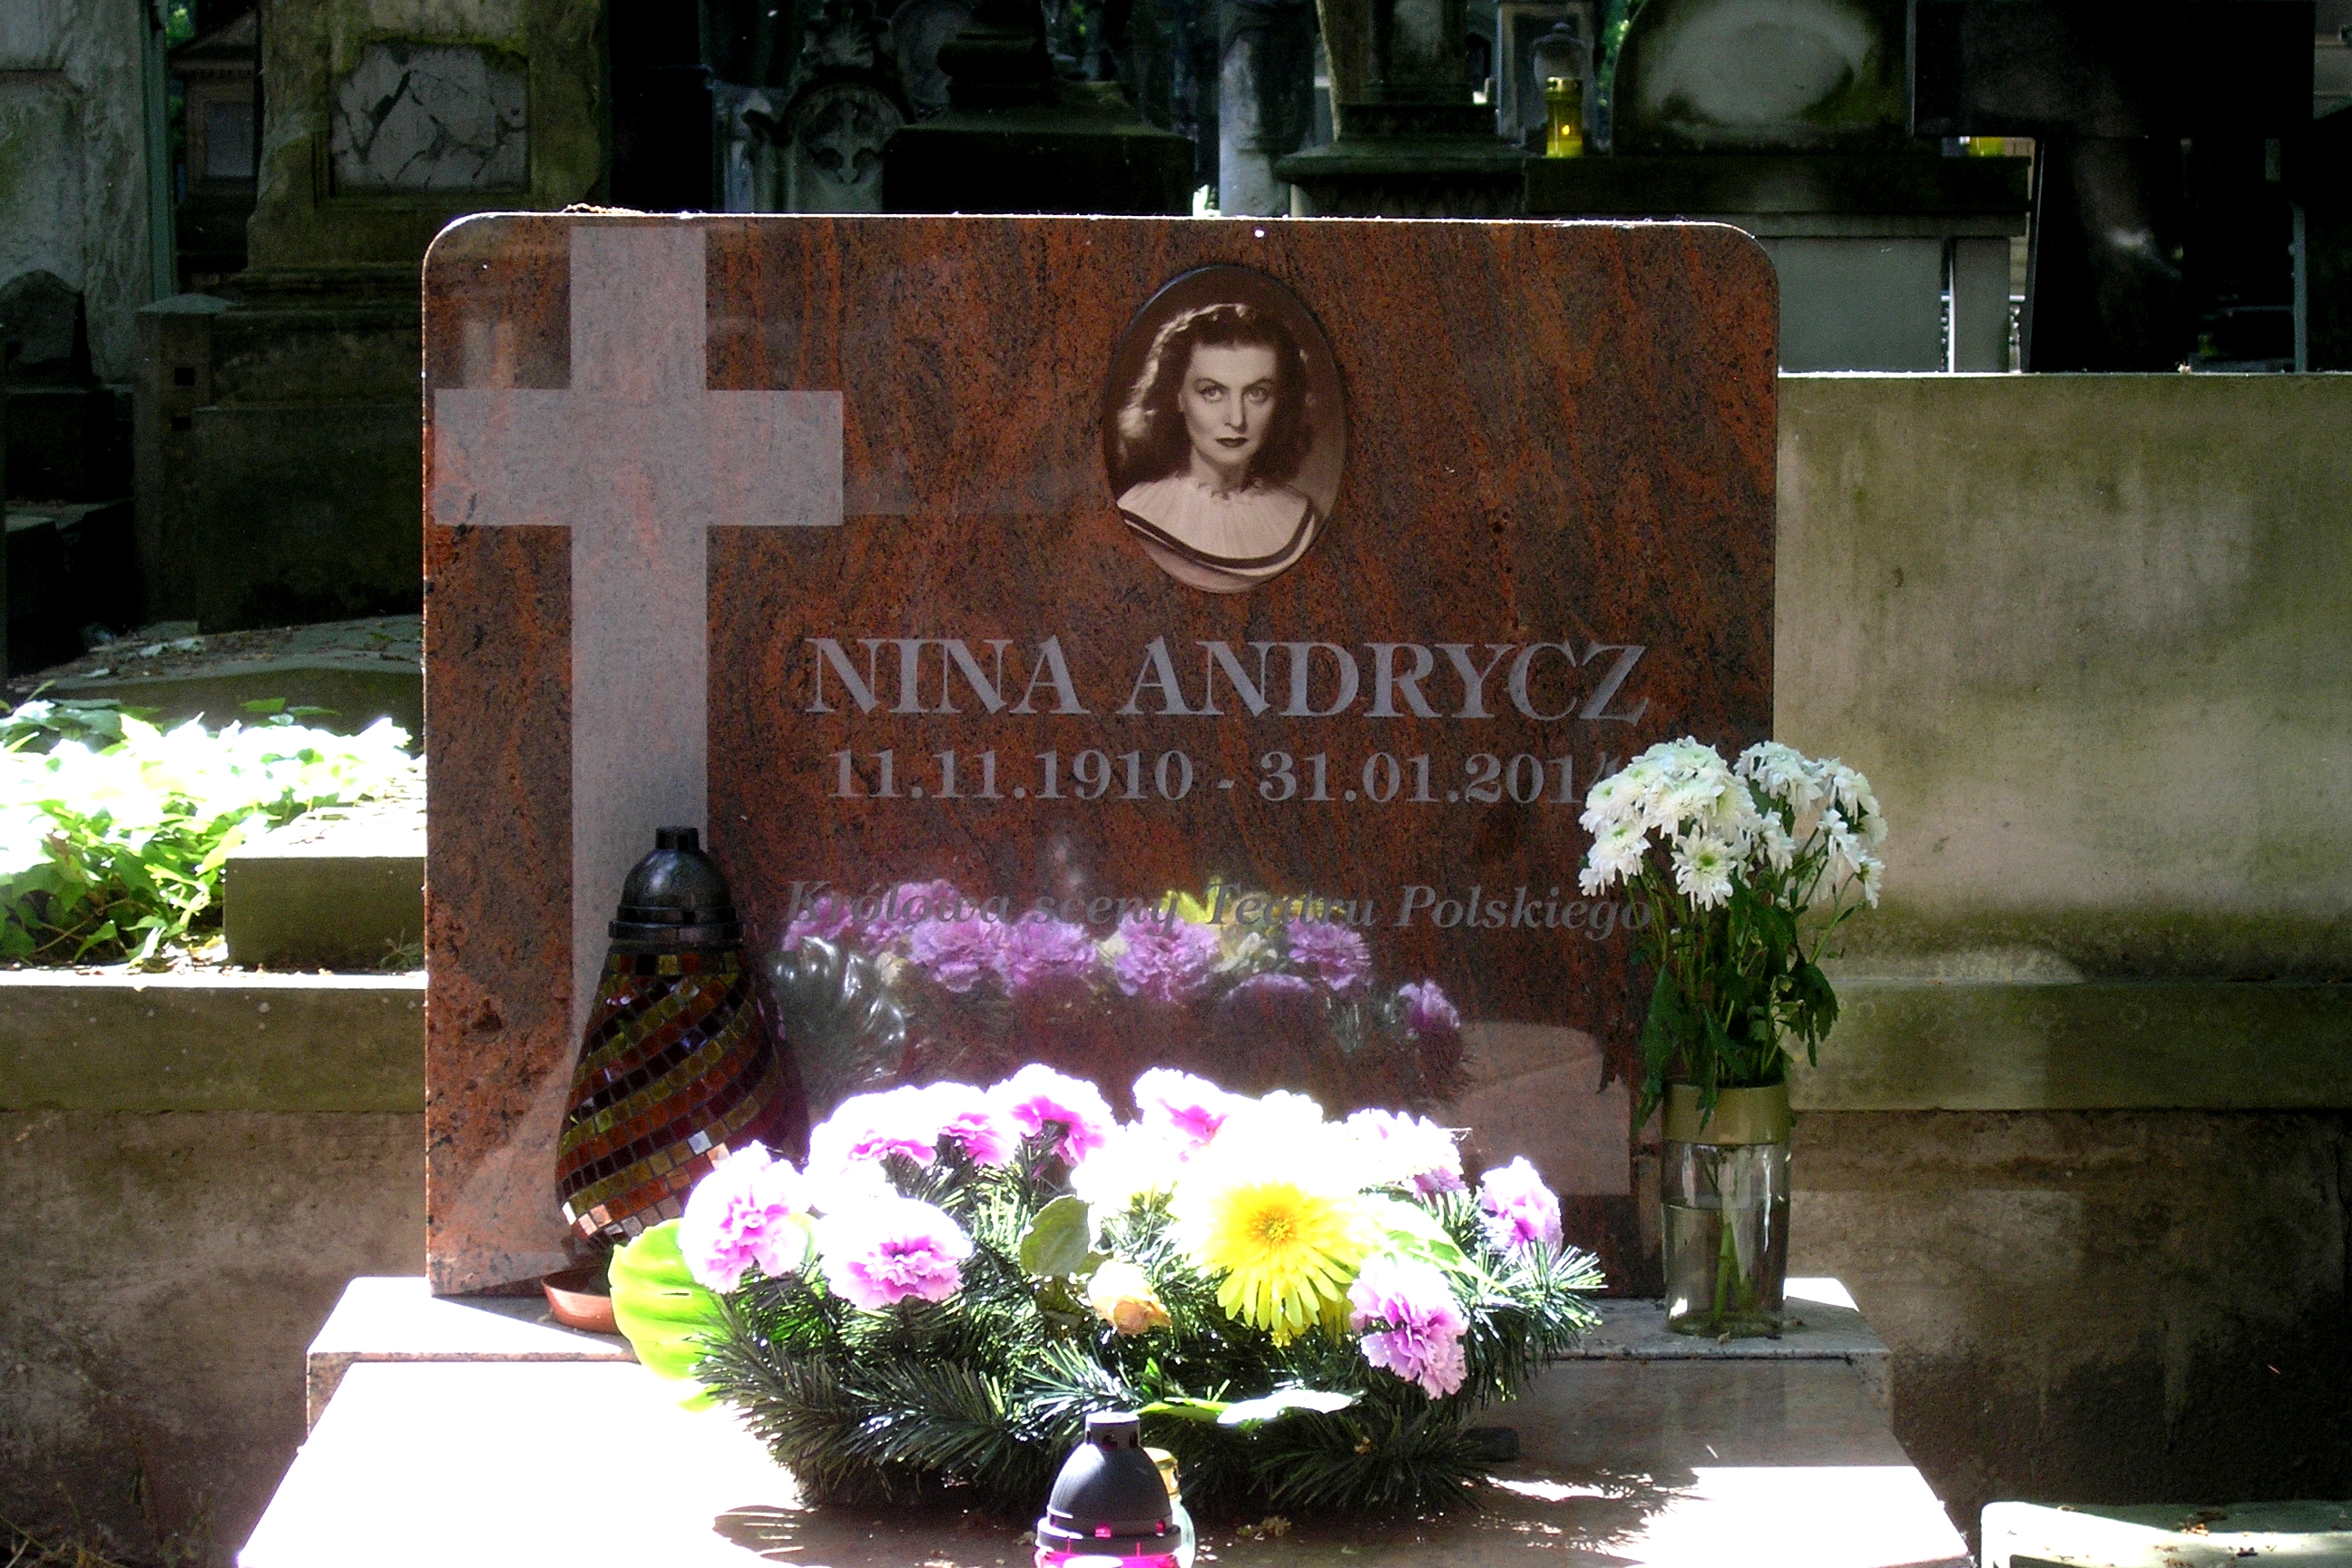 Wikipedia, Nina Andrycz, Powzki Cemetery - A, Self-published work